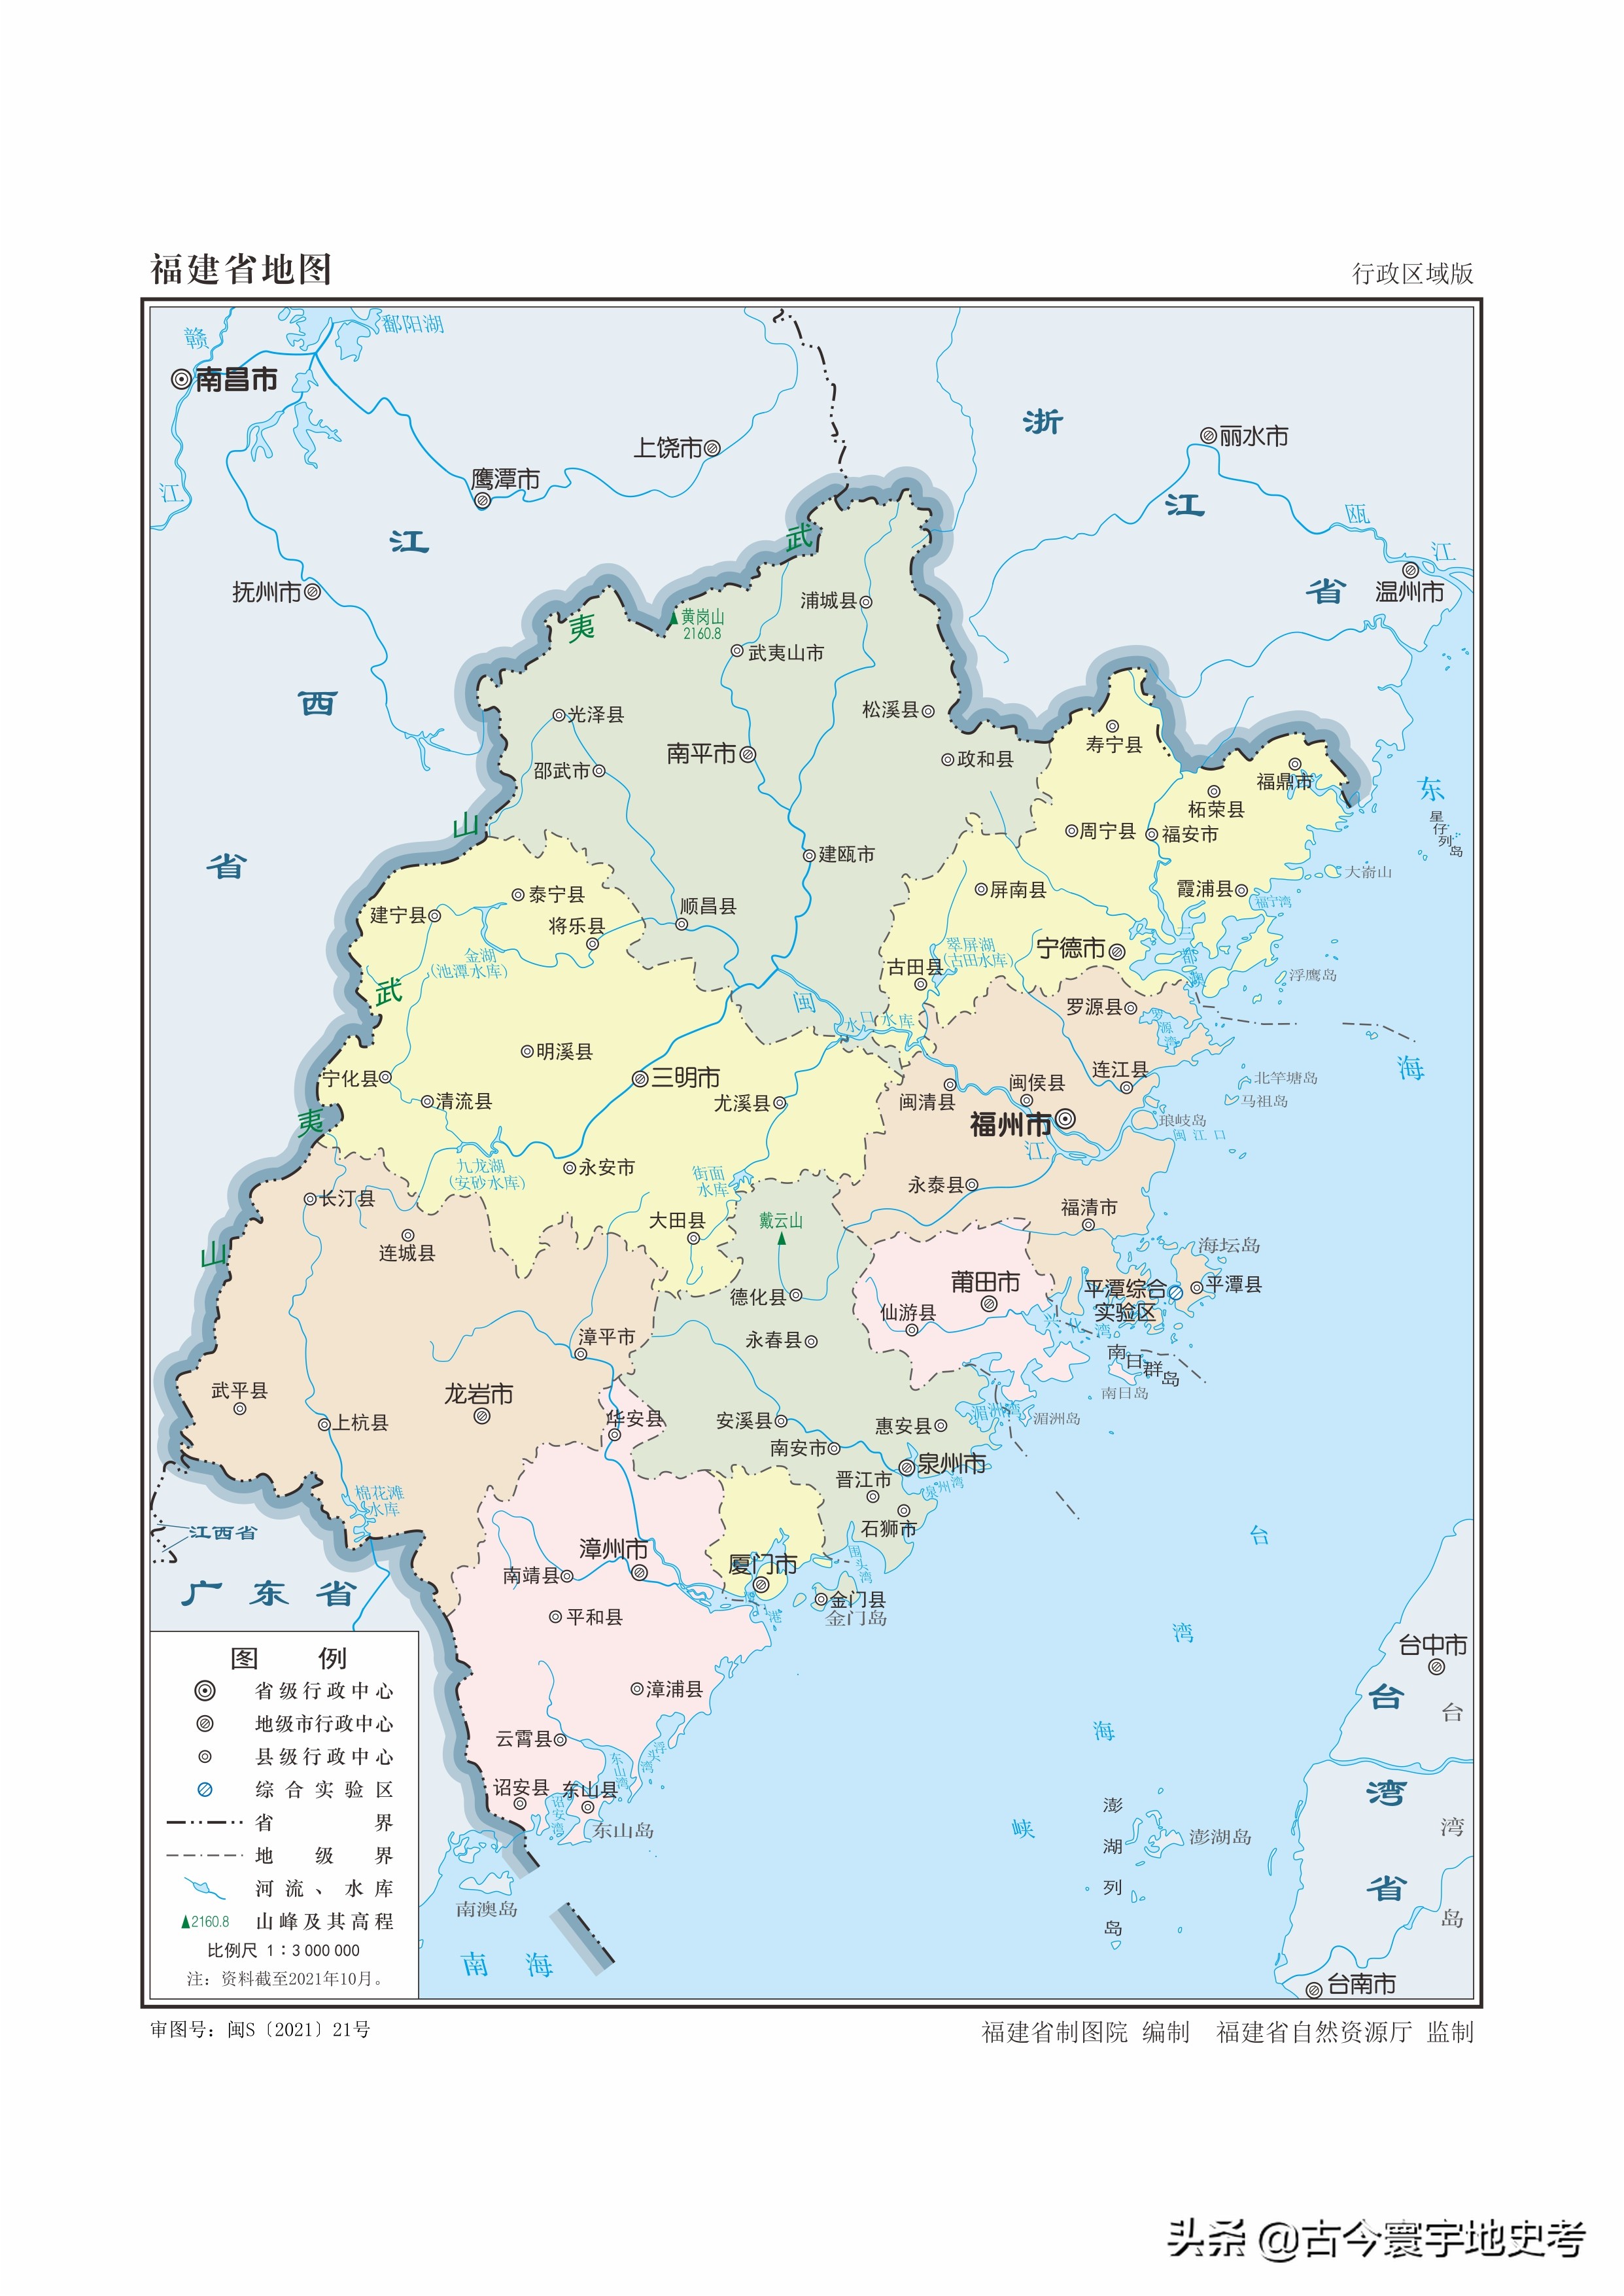 福建省政区图